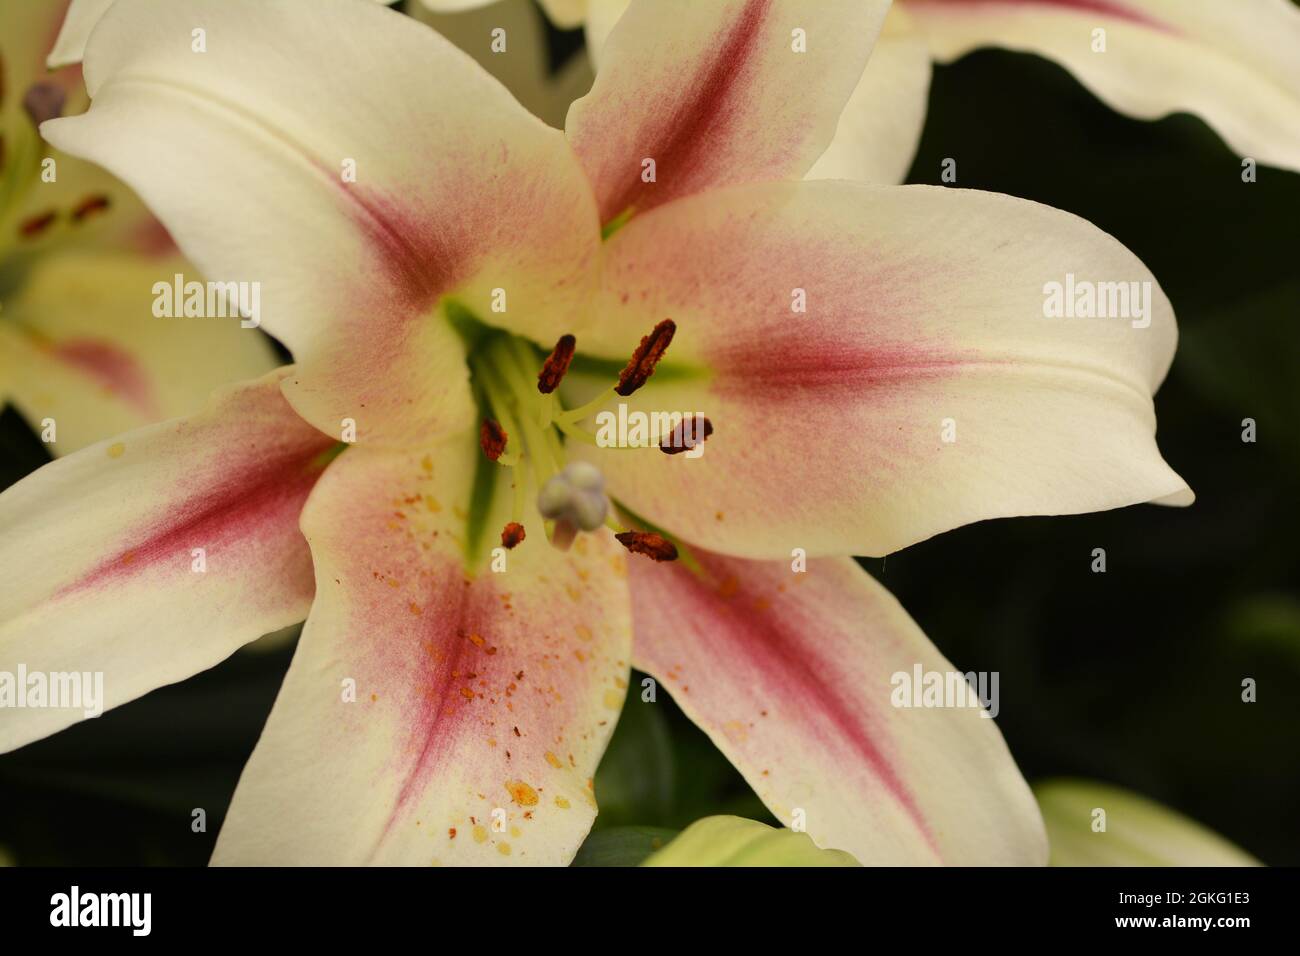 Makrobild der Blütenblätter und Stistillen einer Lilie. Stockfoto